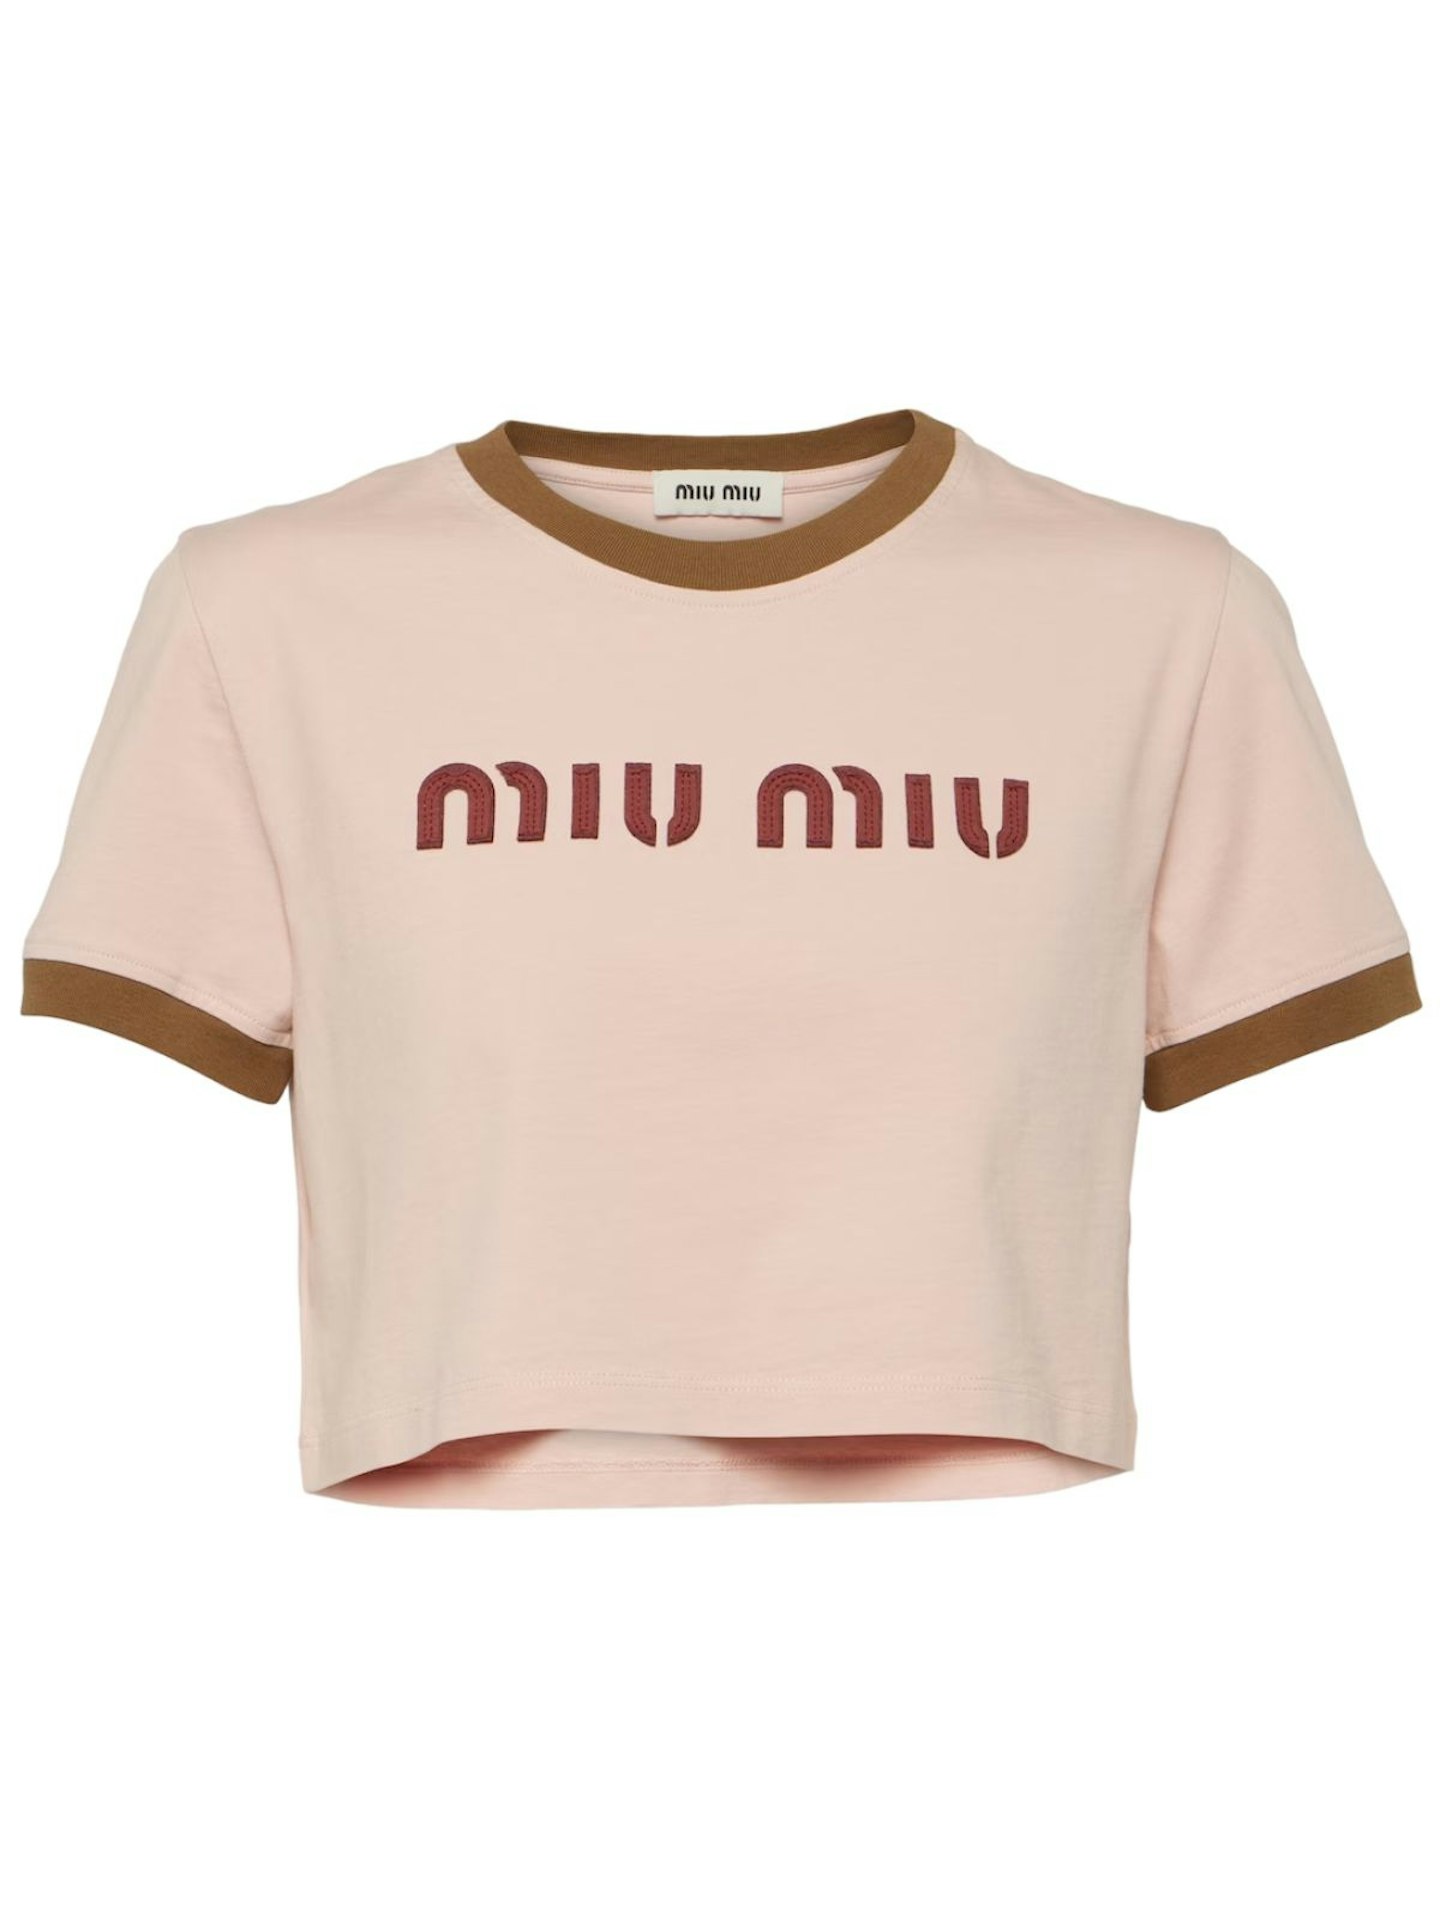 Miu Miu Logo Cotton Crop Top